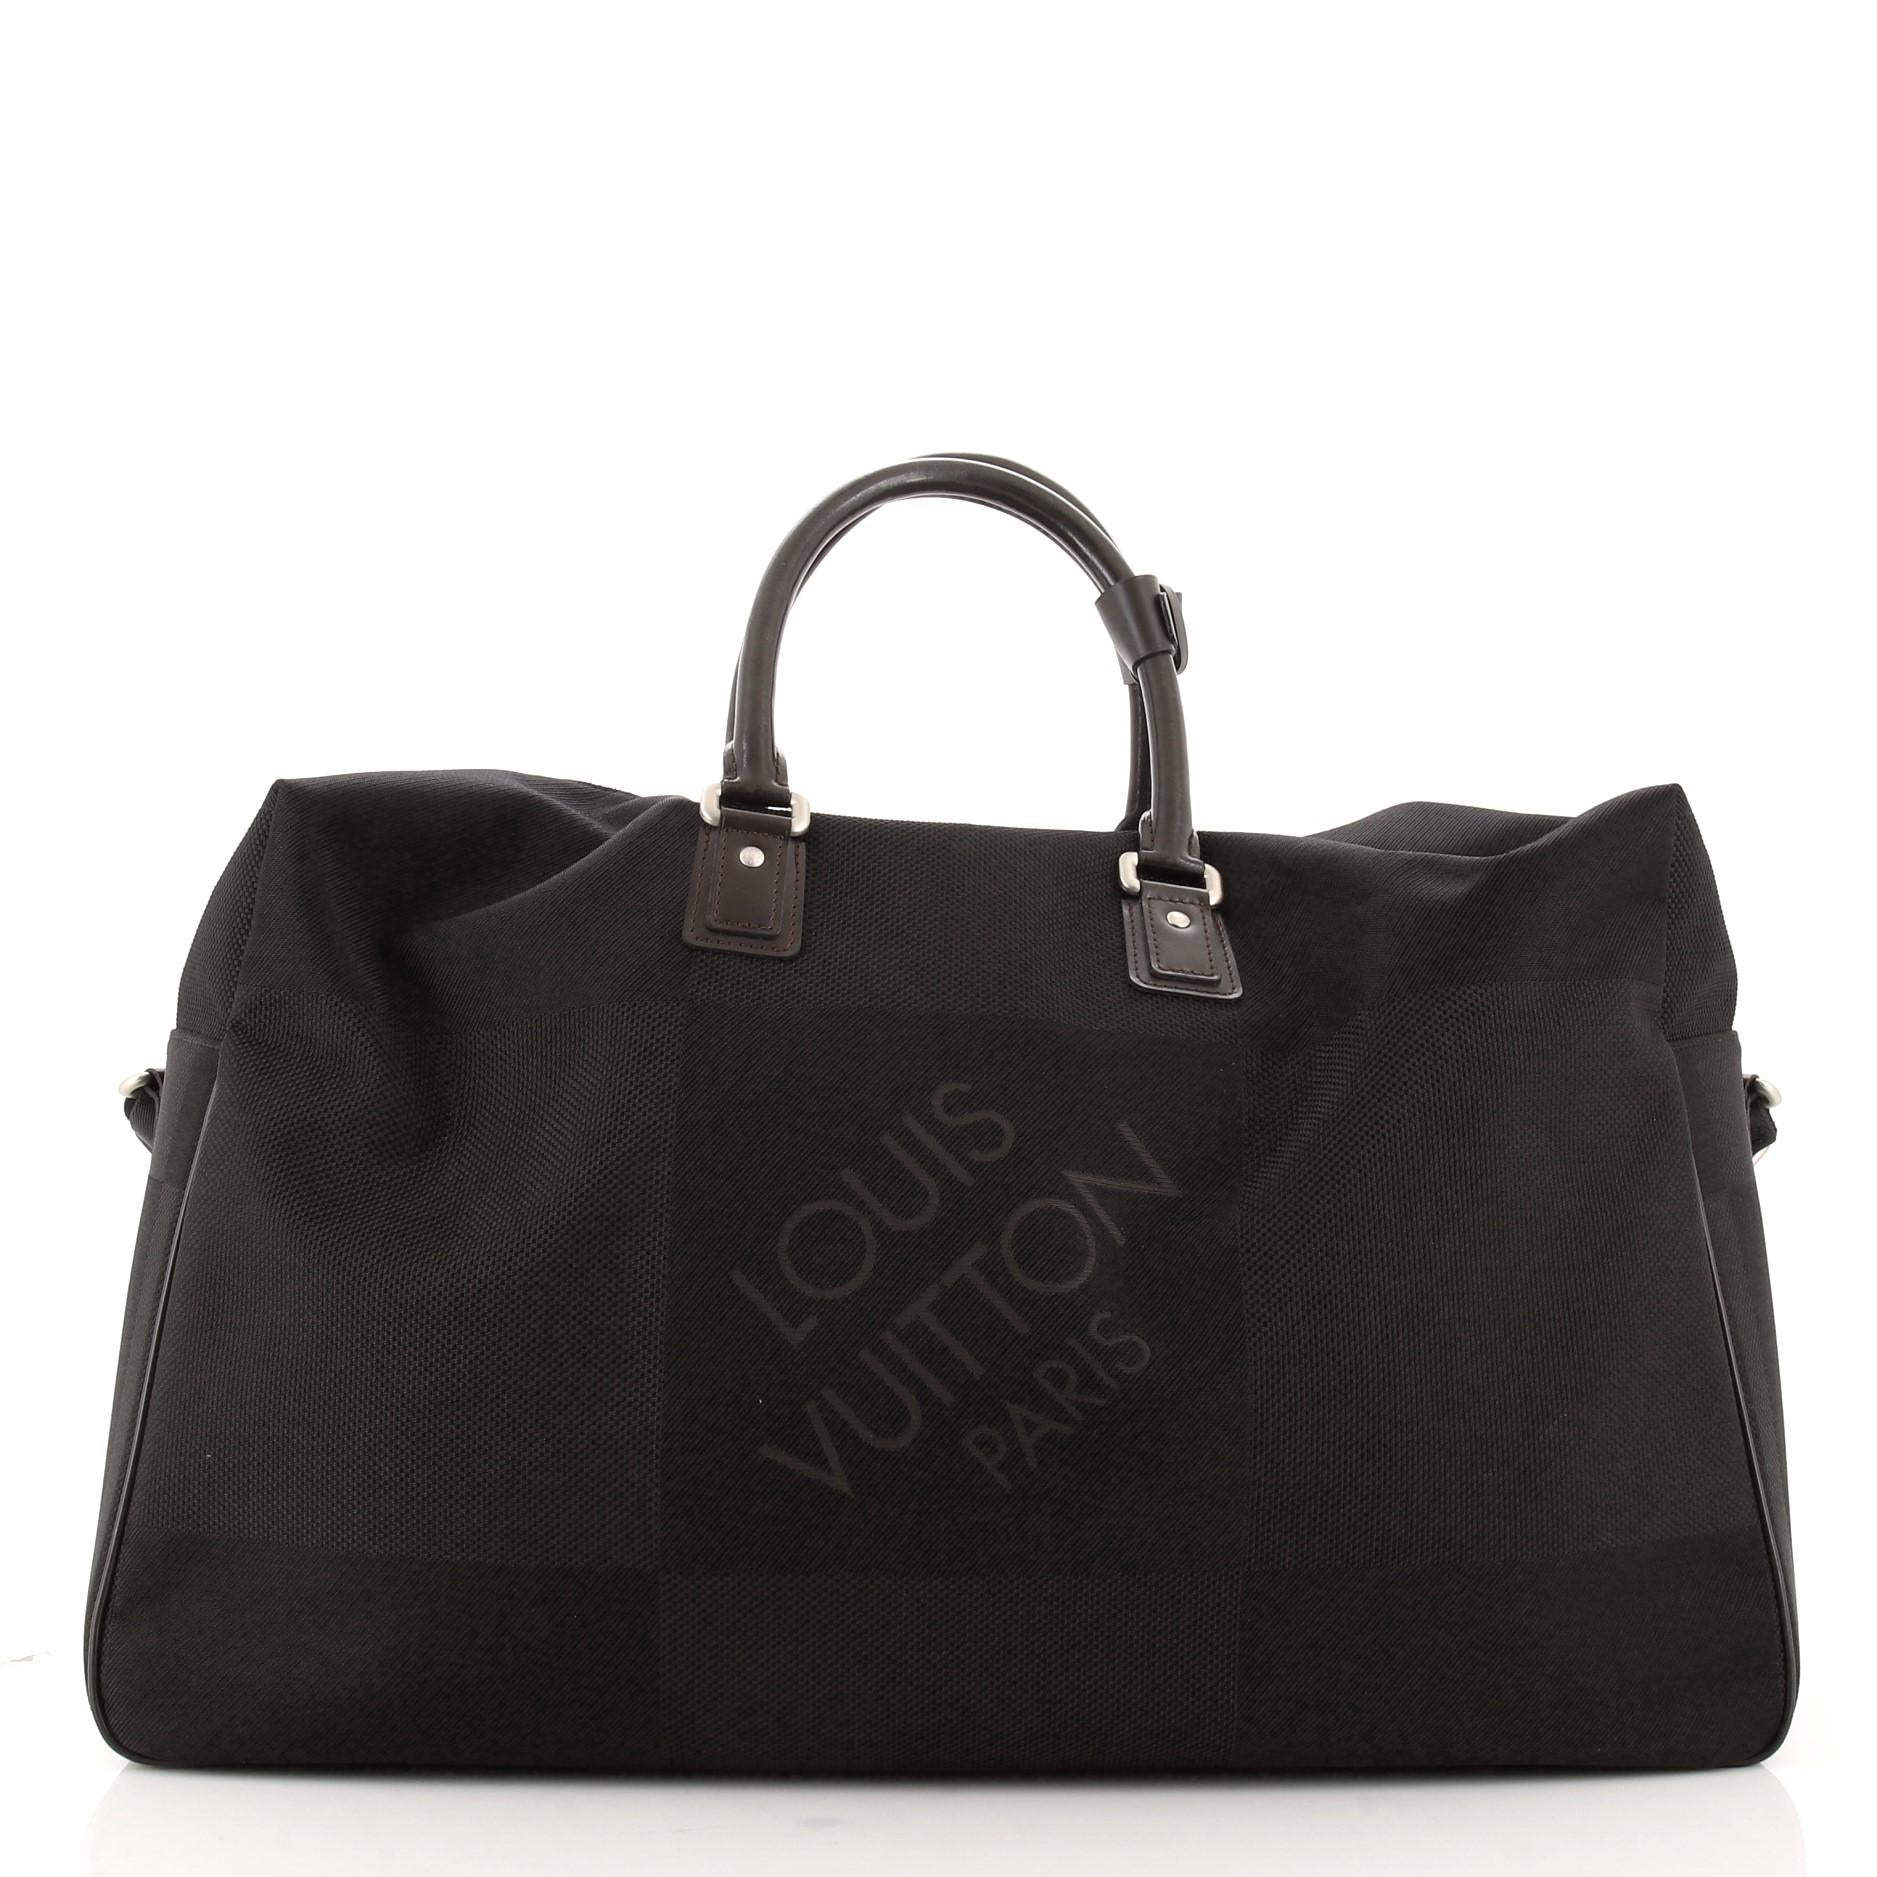 Black Louis Vuitton Souverain Duffle Bag Damier Geant Canvas